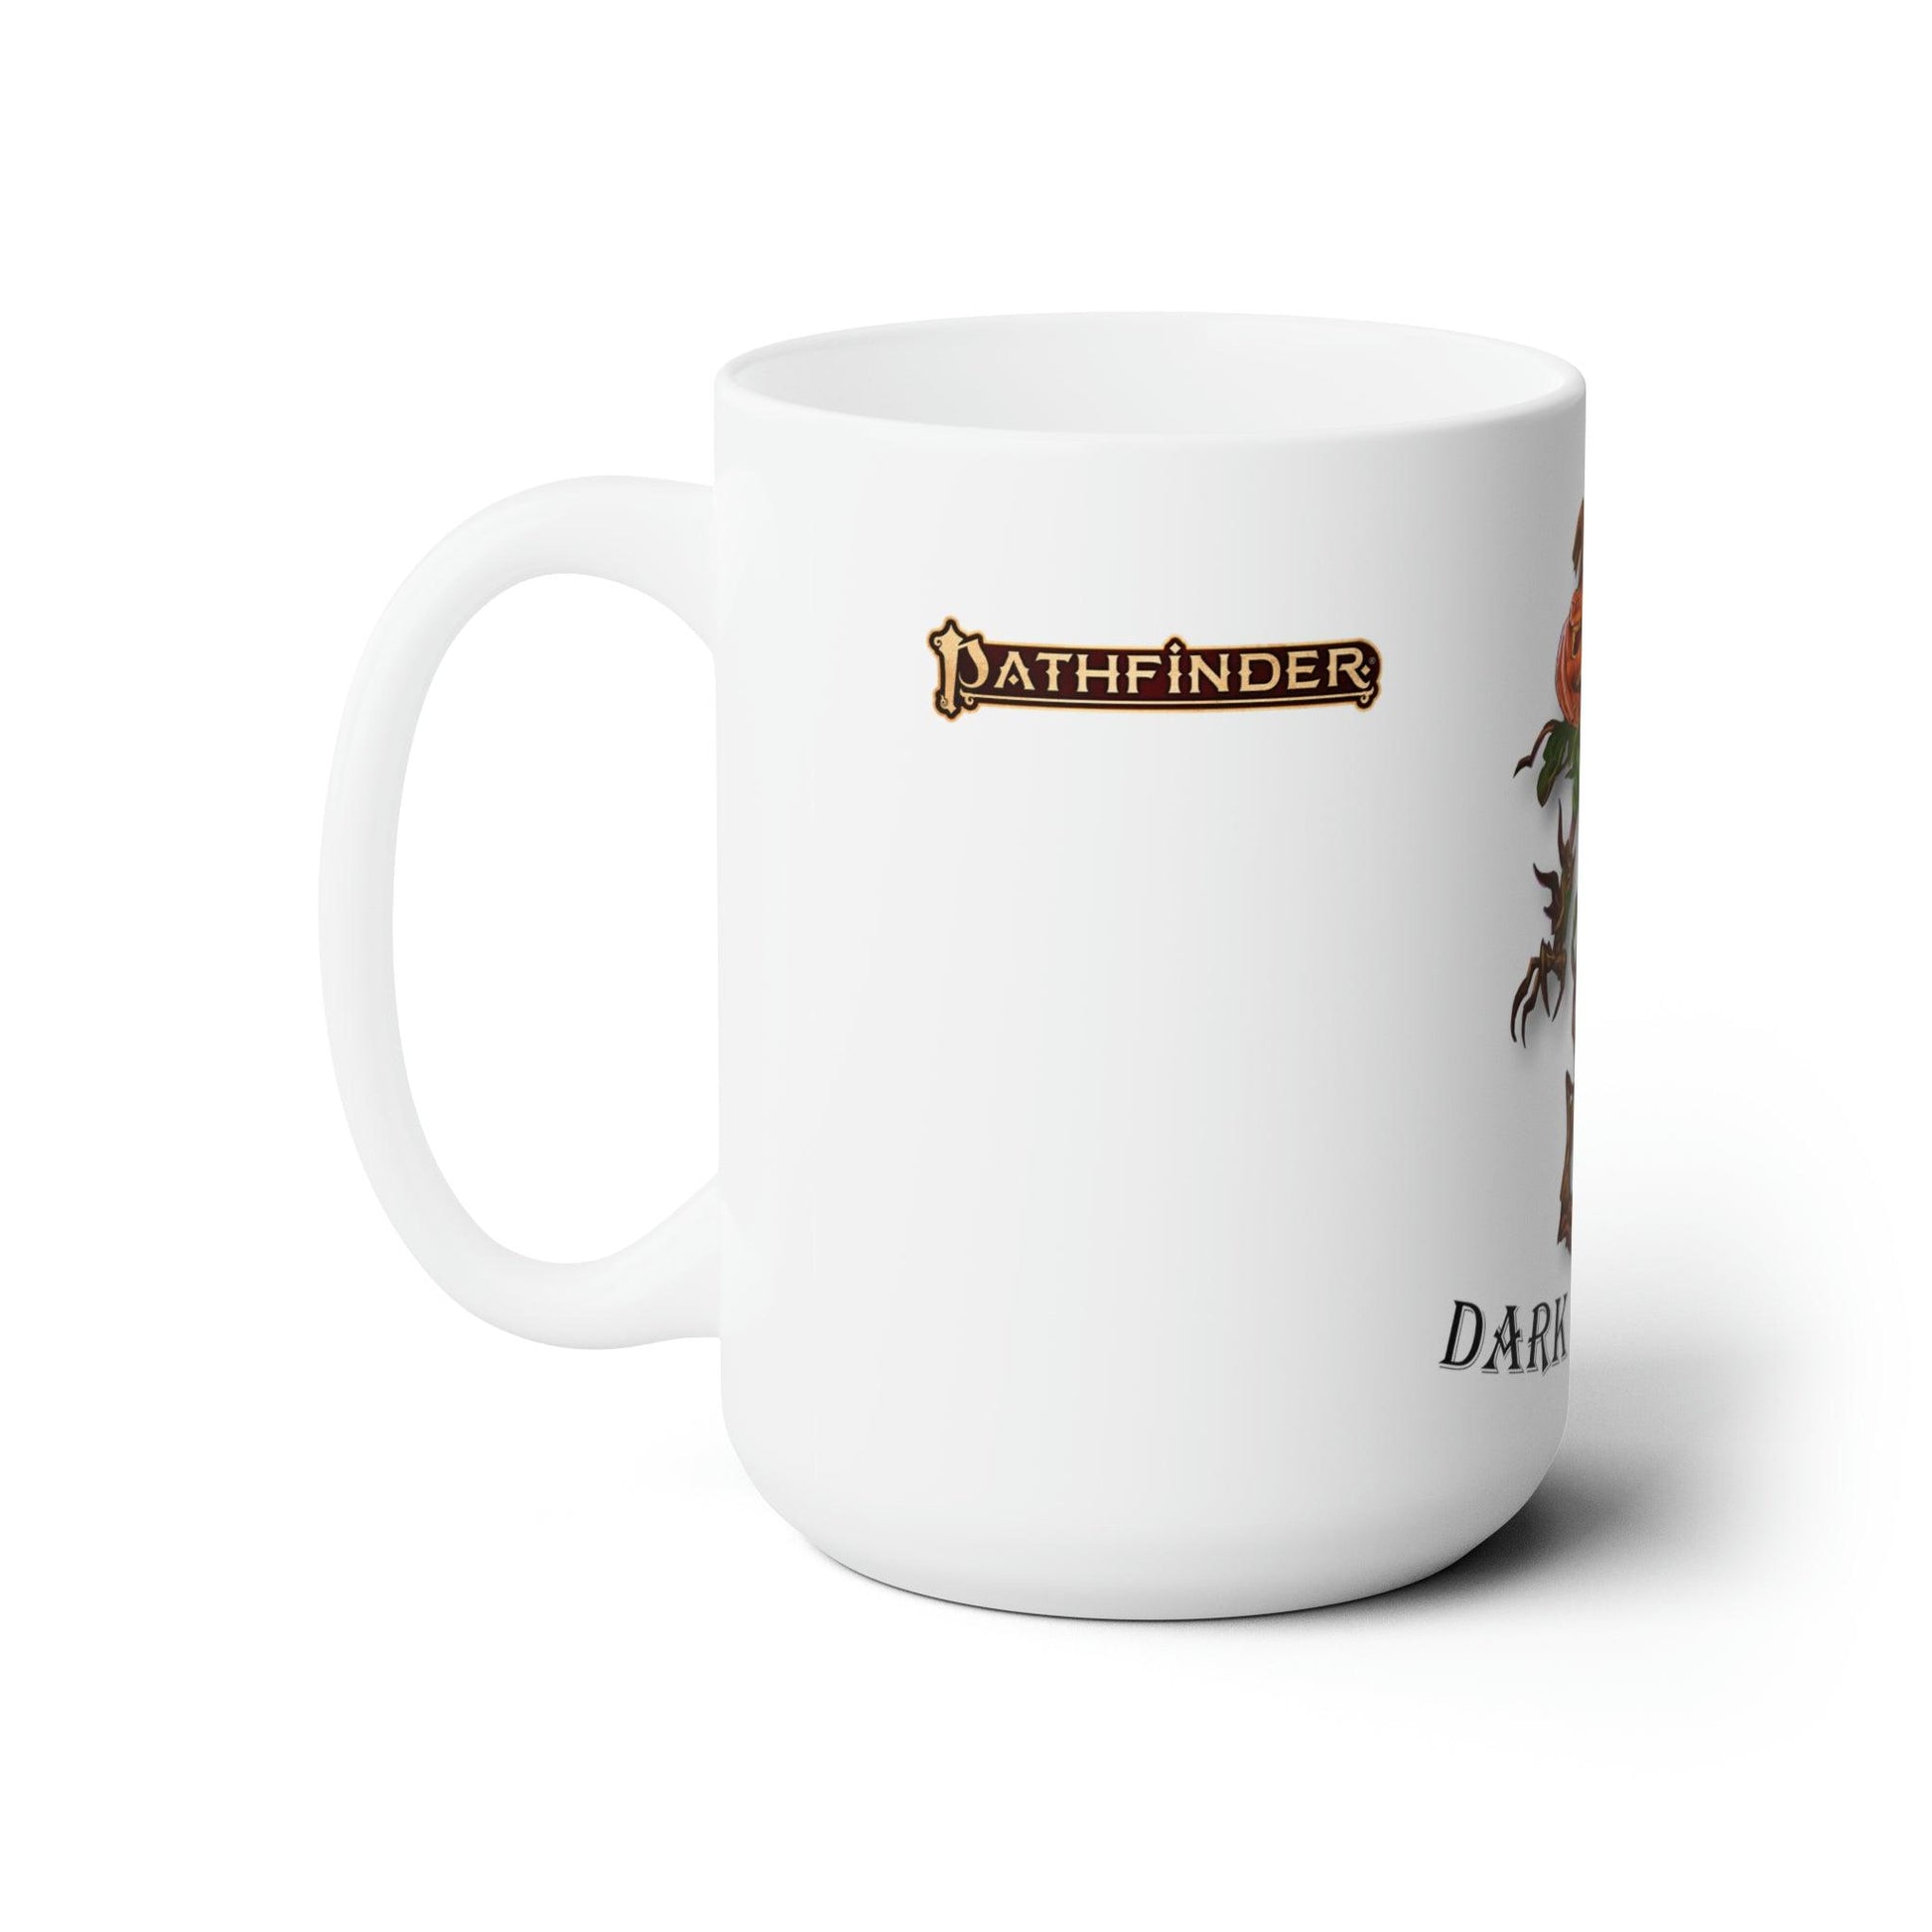 Dark Harvest - Pathfinder Mug - Geek Grind Coffee